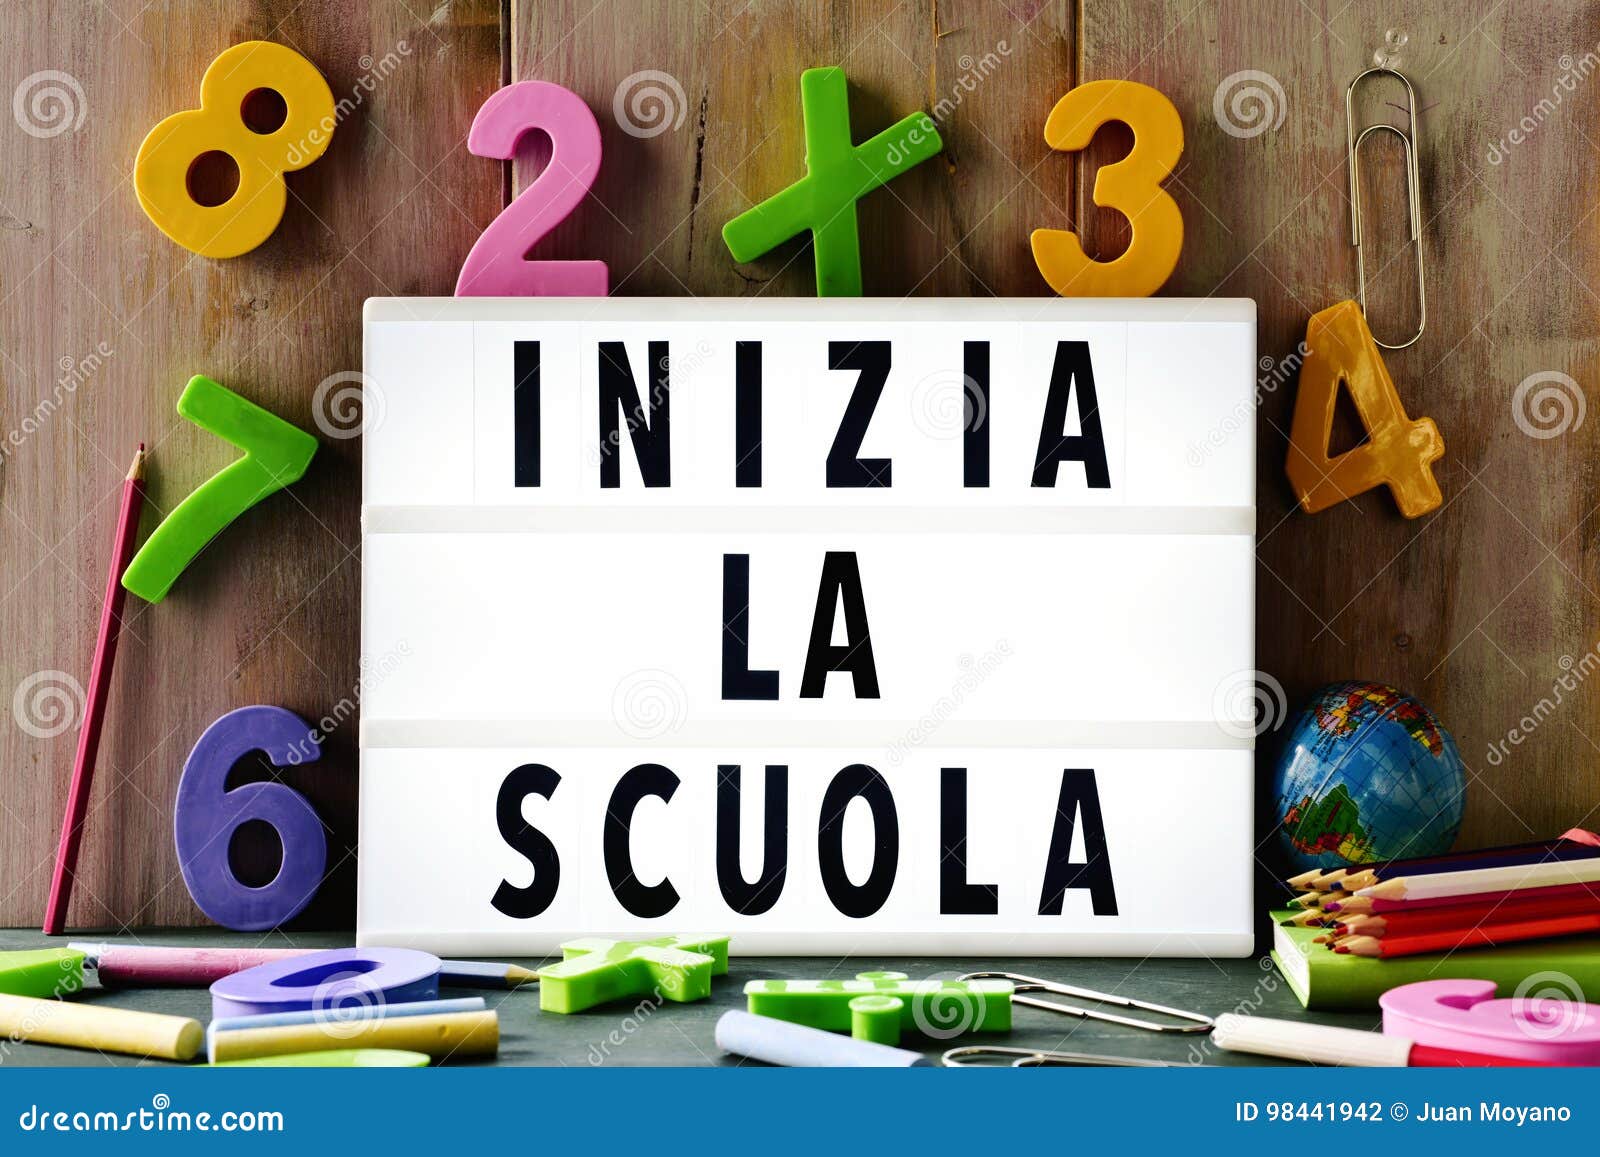 text inizia la scuola, back to school in italian